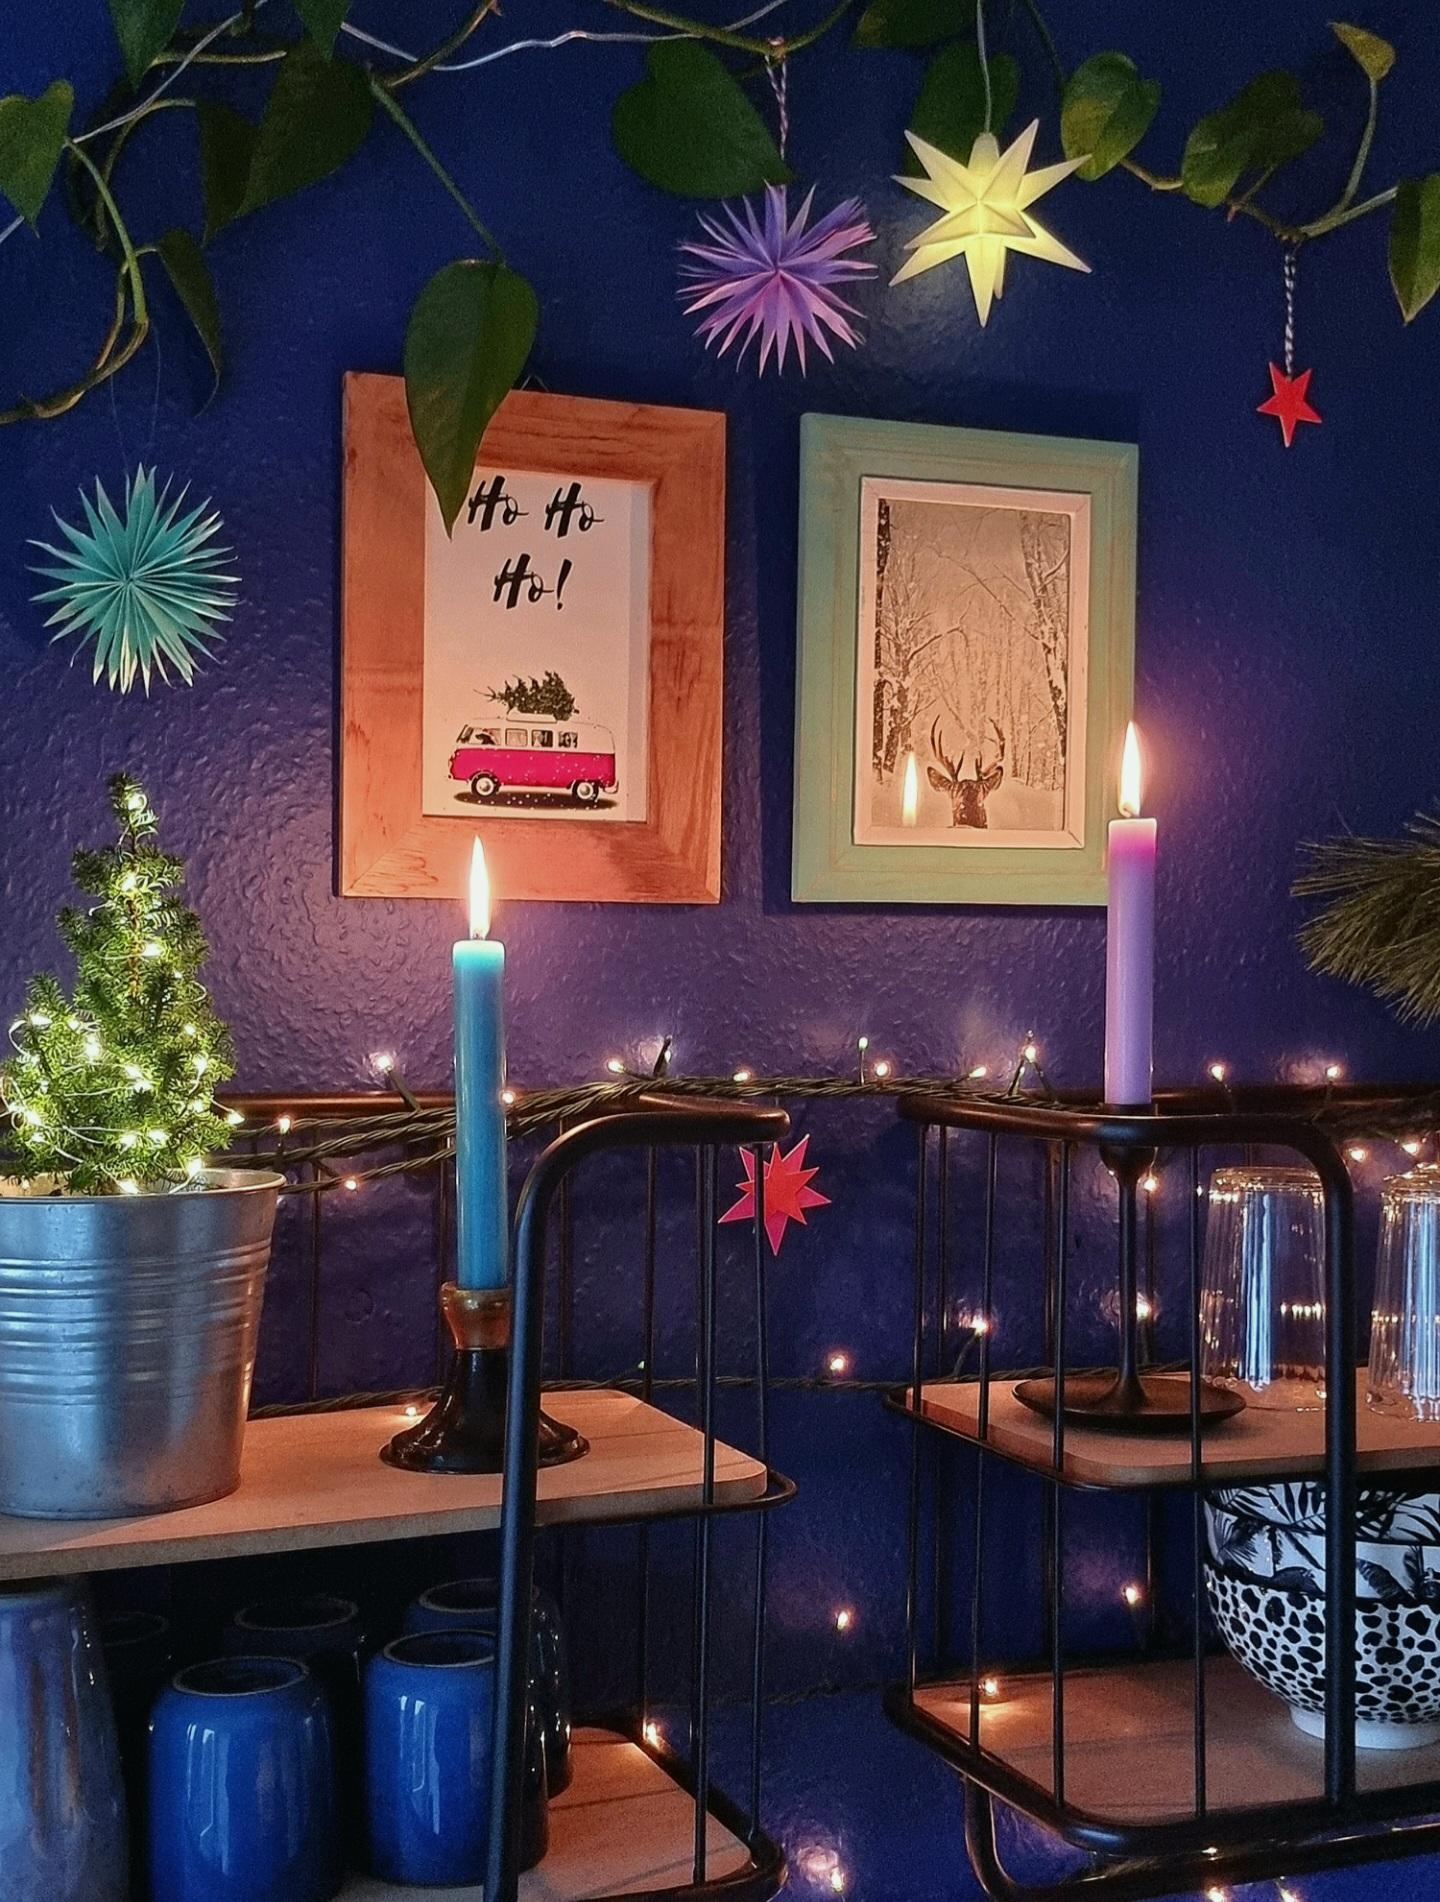 Am Wochenende beginnt die #Weihnachtsdeko in der #Küche mit #diy #Sterne #Lichterkette & #Farbe #cozy #xmas 💫